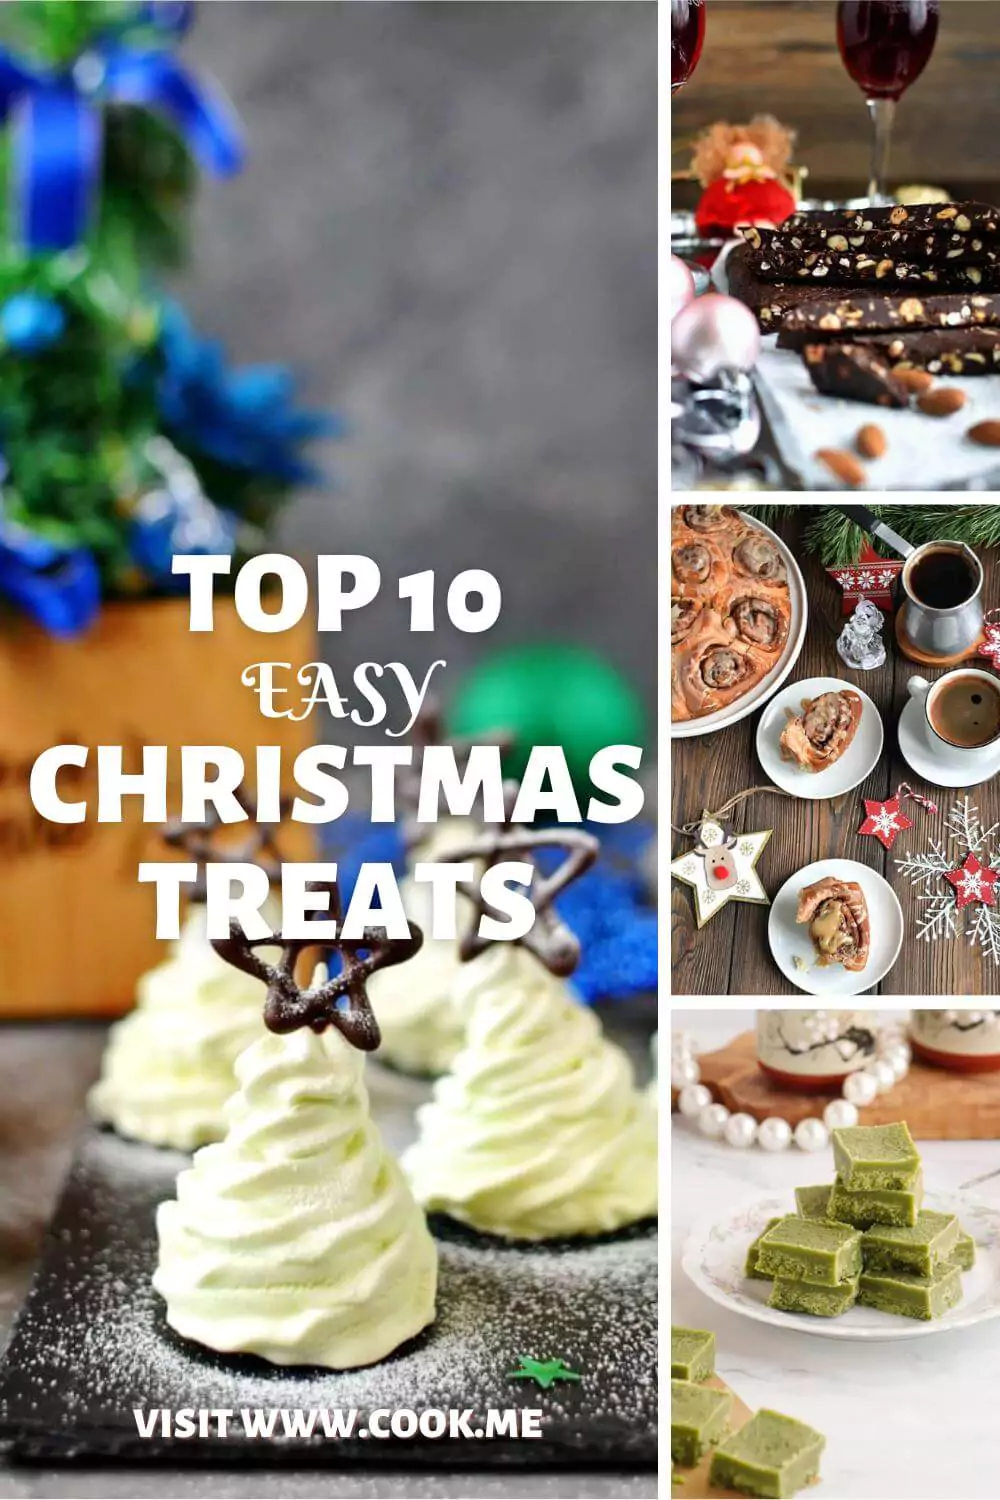 TOP 10 Easy Christmas Treats -  Recipes